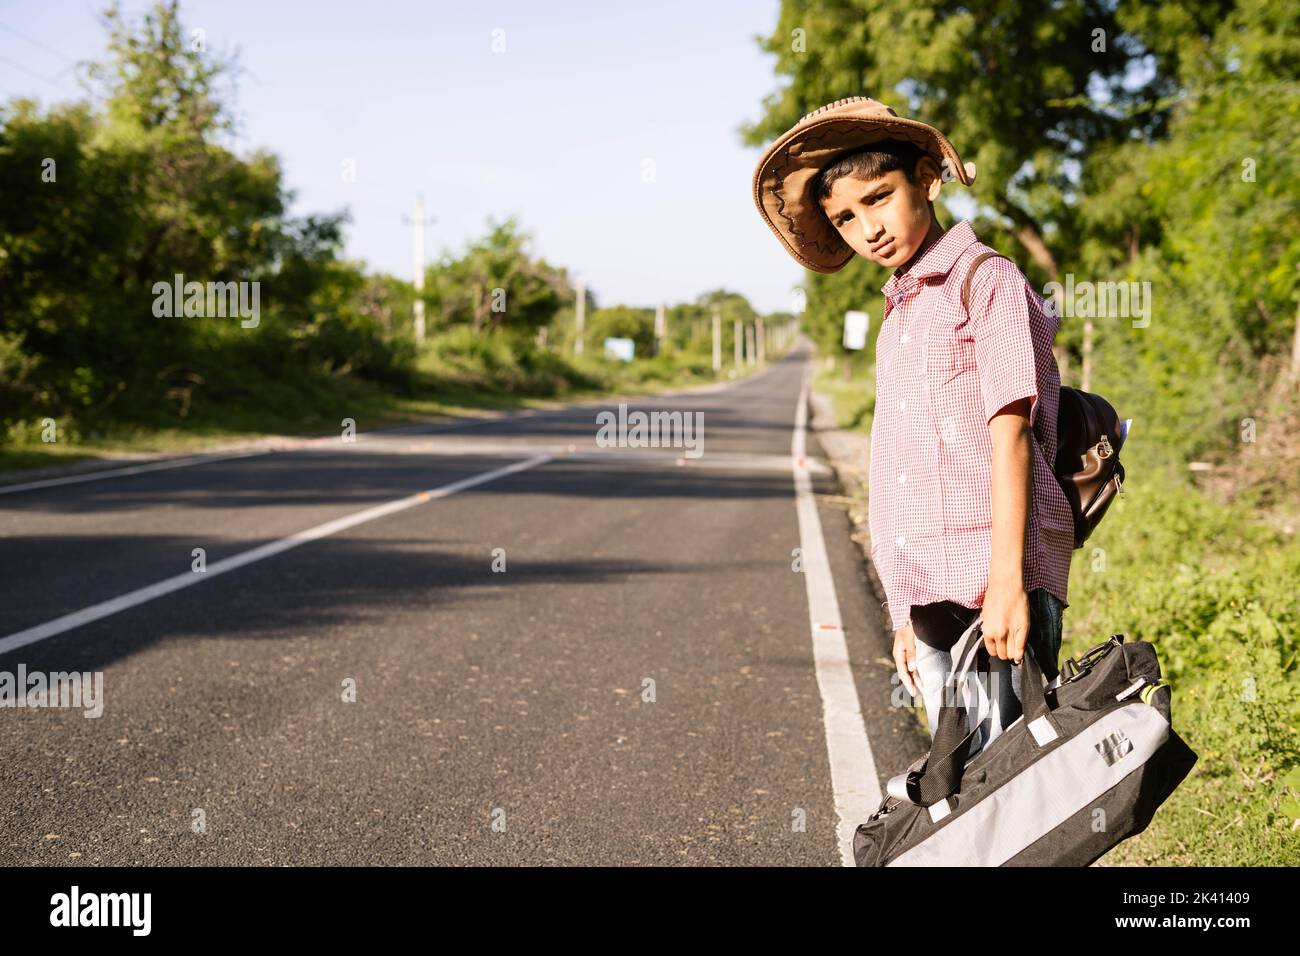 Niño adolescente indio esperando un autobús o un taxi en la carretera durante su viaje de vacaciones - concepto de viaje, vacaciones de fin de semana y vida de ocio. Foto de stock